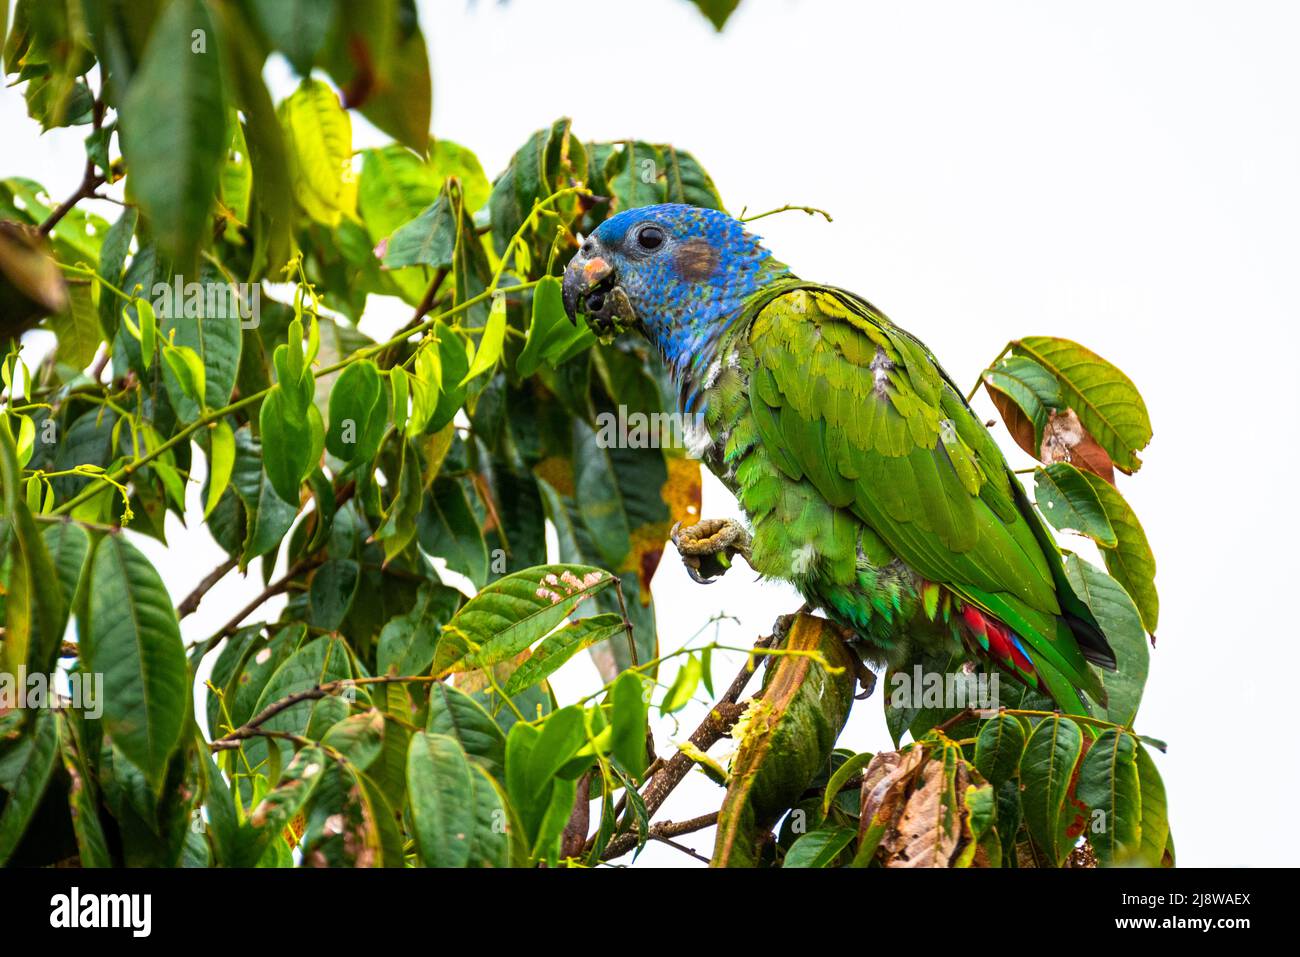 Perroquet à tête bleue se nourrissant sur un arbre à partir de graines Banque D'Images